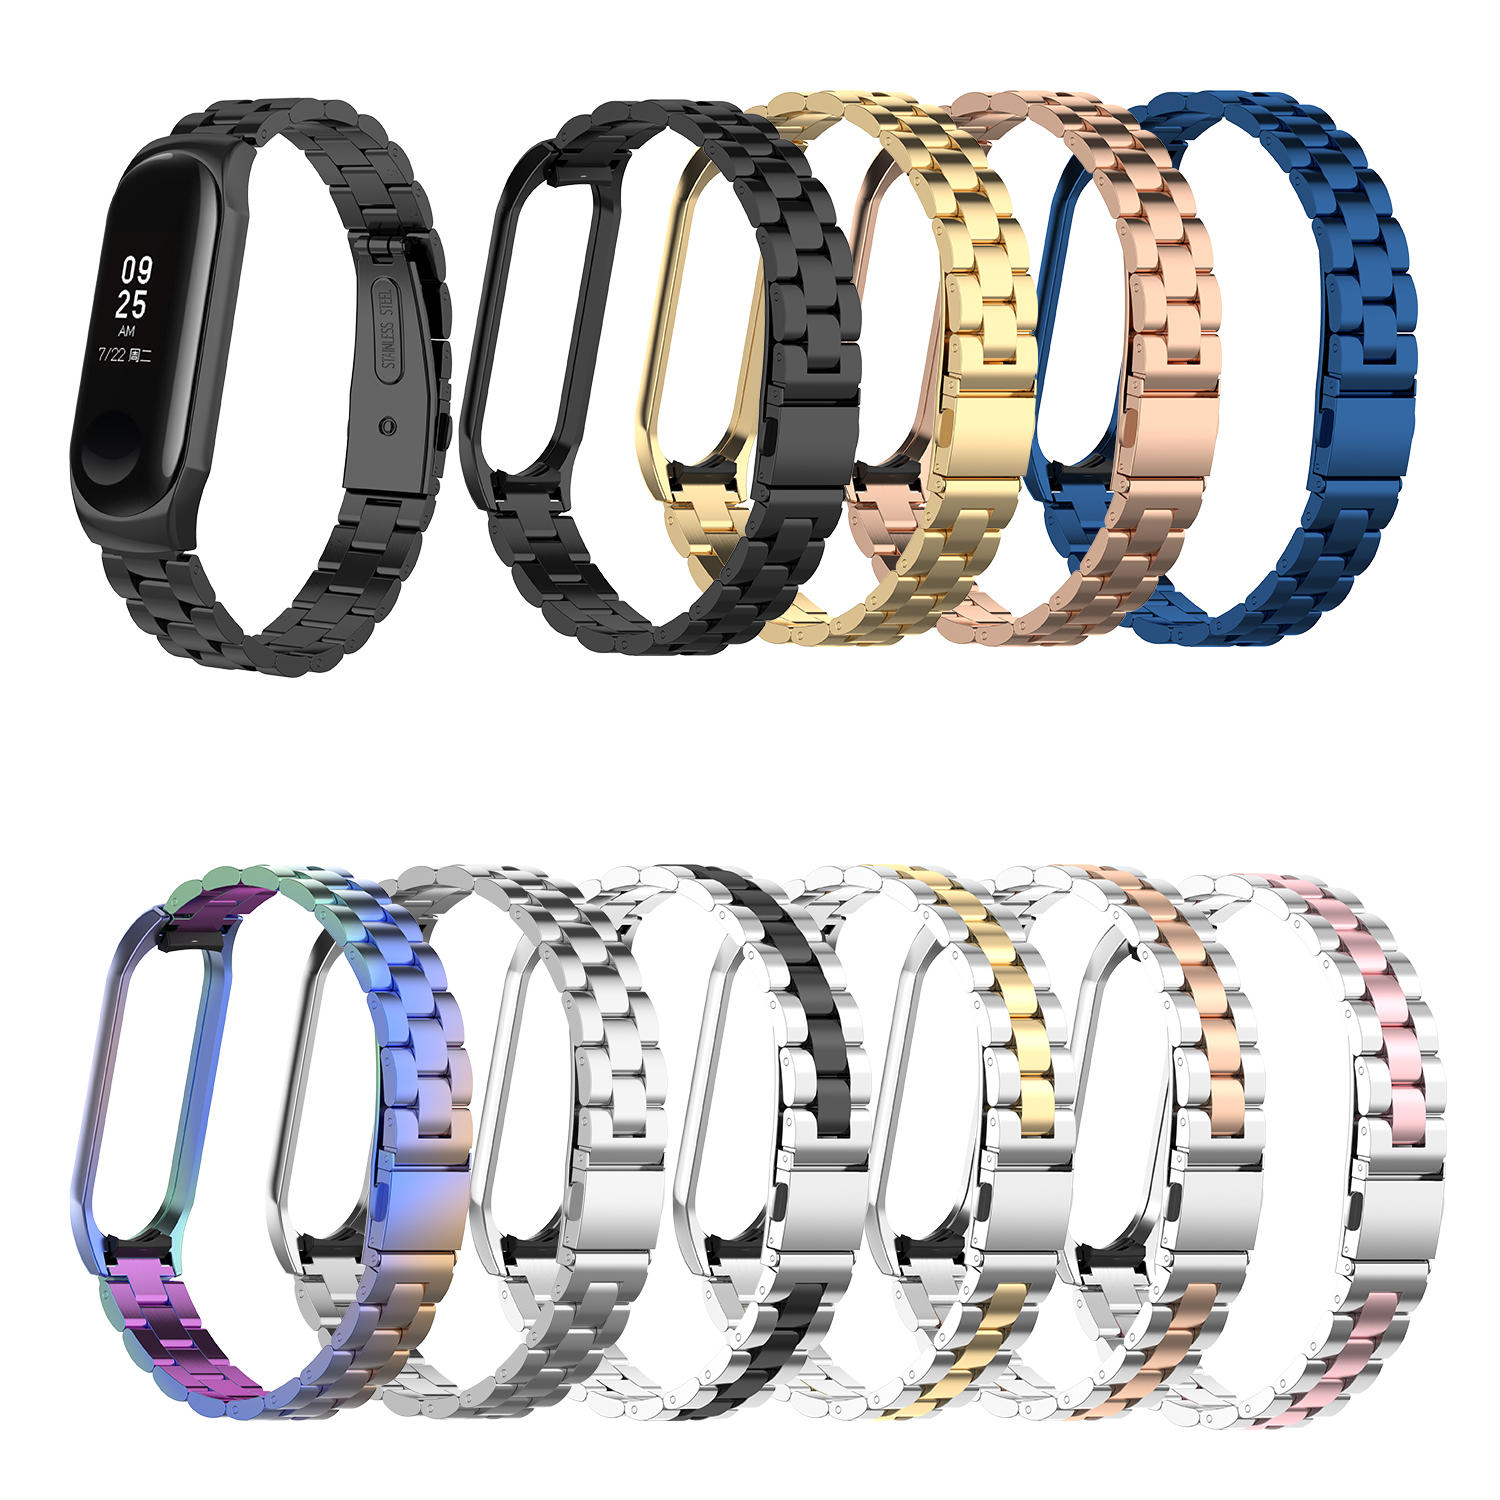 Bakeey Colorful Roestvrij stalen horlogeband vervangende horlogeband voor Xiaomi mi band 3/4 niet-or